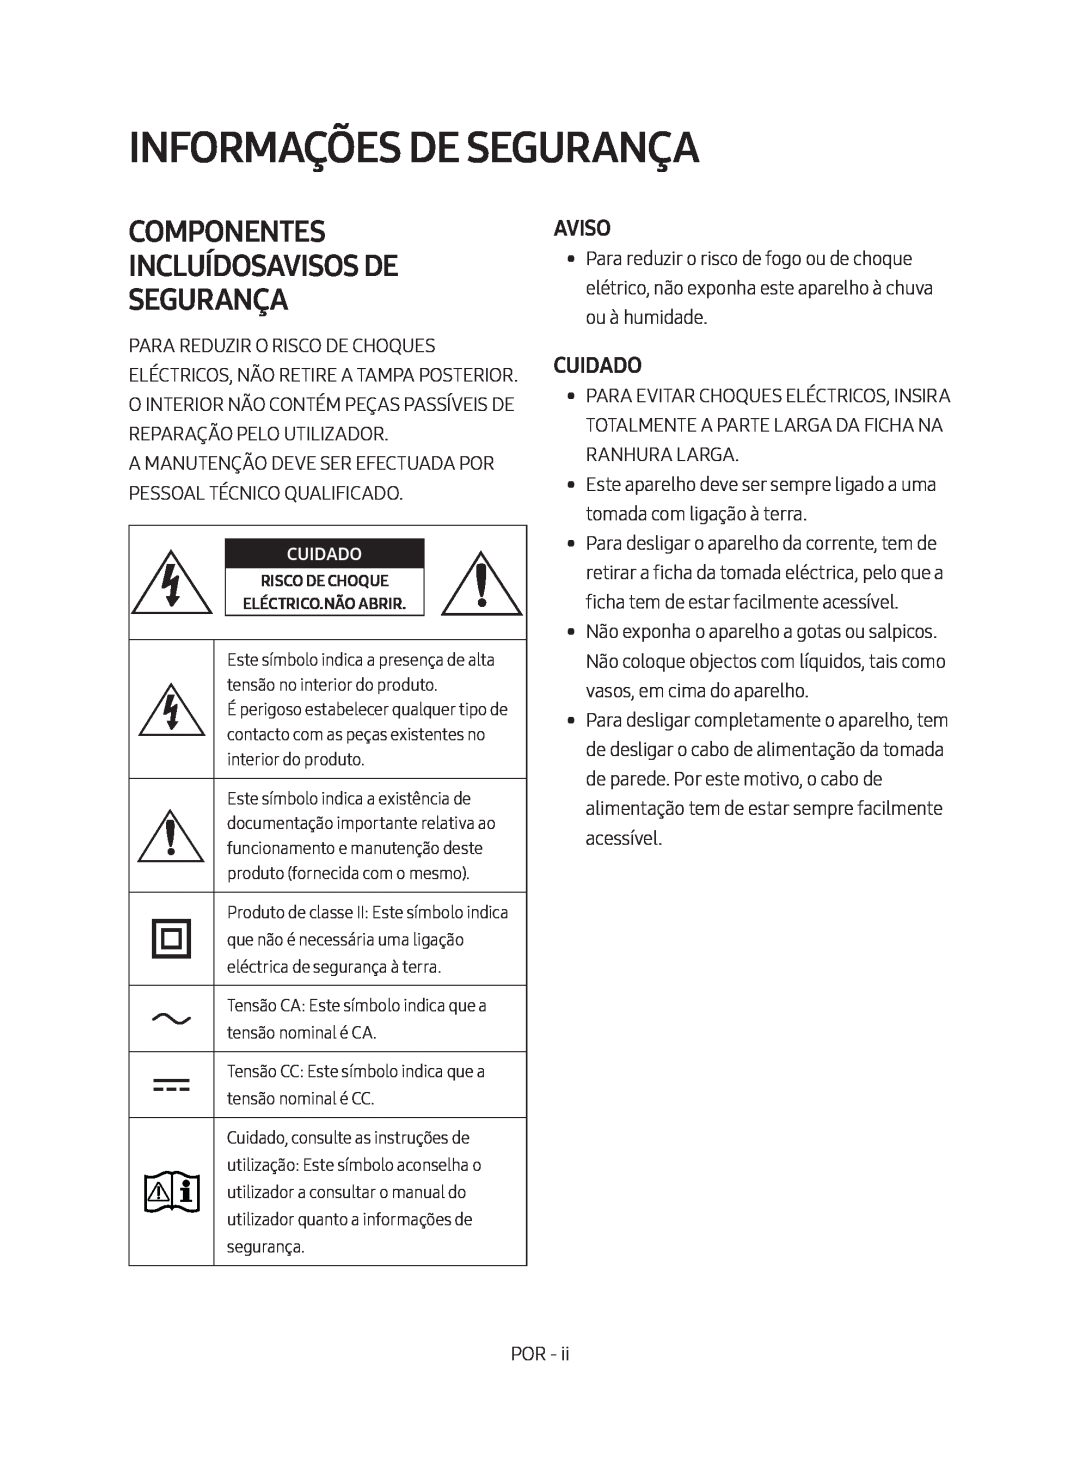 Samsung HW-M450/ZF, HW-M450/EN manual Informações De Segurança, Componentes Incluídosavisos De Segurança, Aviso, Cuidado 